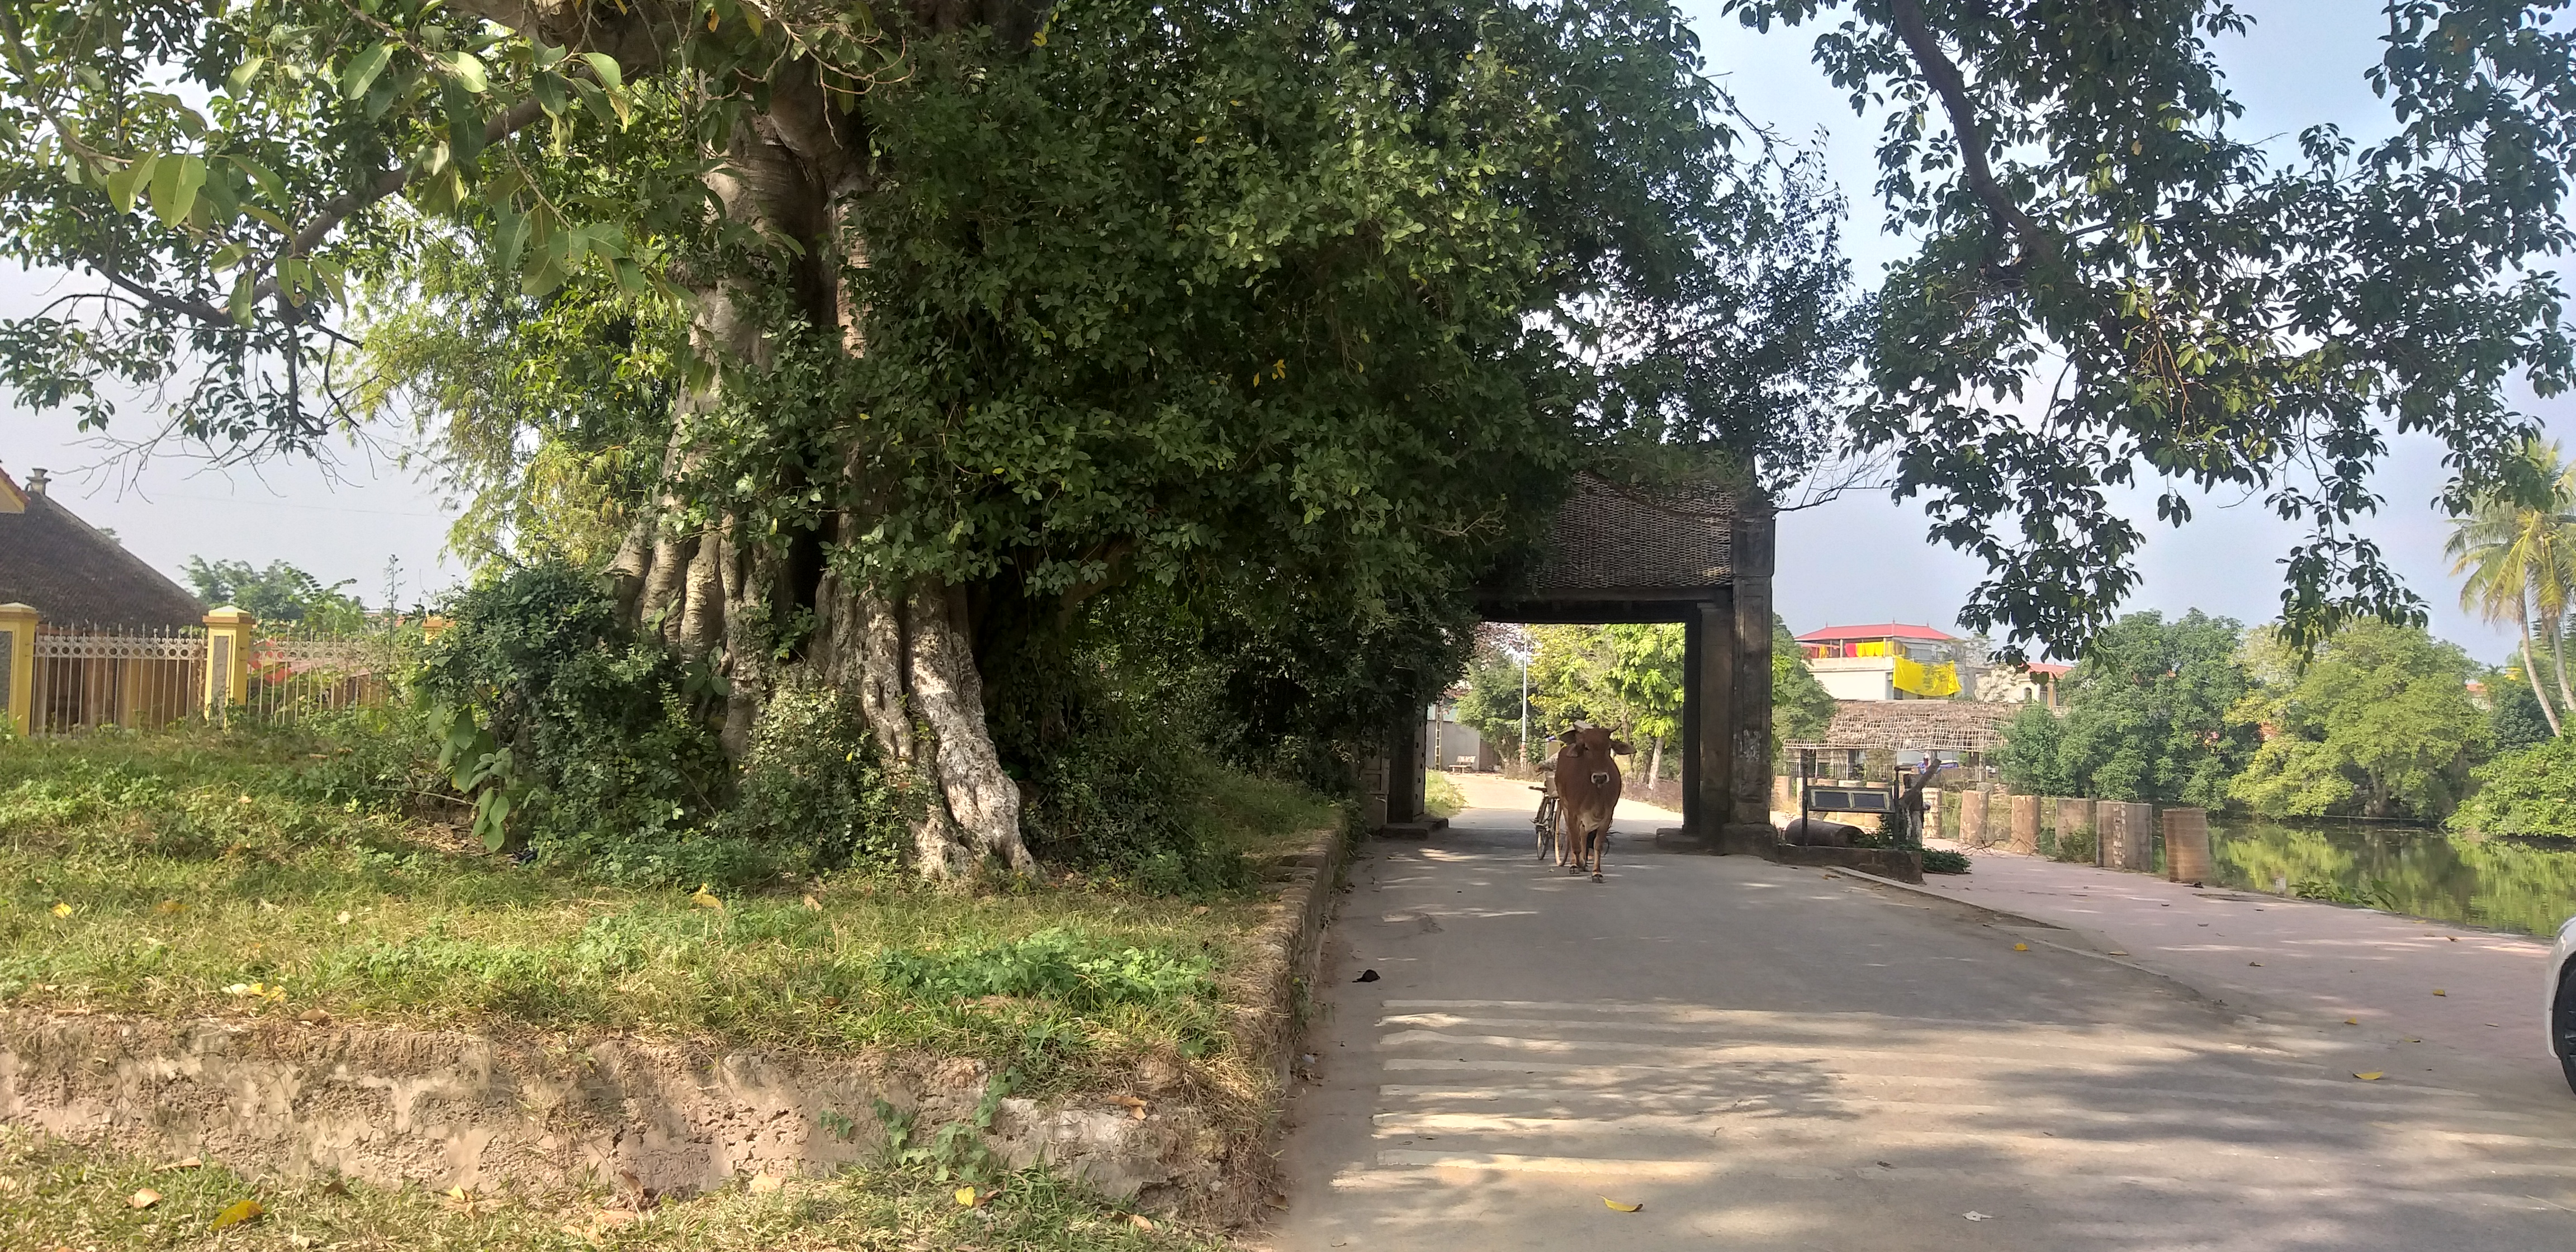 Cách trung tâm TP Hà Nội khoảng 40 km về phía Tây, làng cổ Đường Lâm vẫn giữ được những đặc trưng đậm nét làng quê Bắc Bộ với cây đa, bến nước, sân đình, chùa miếu.